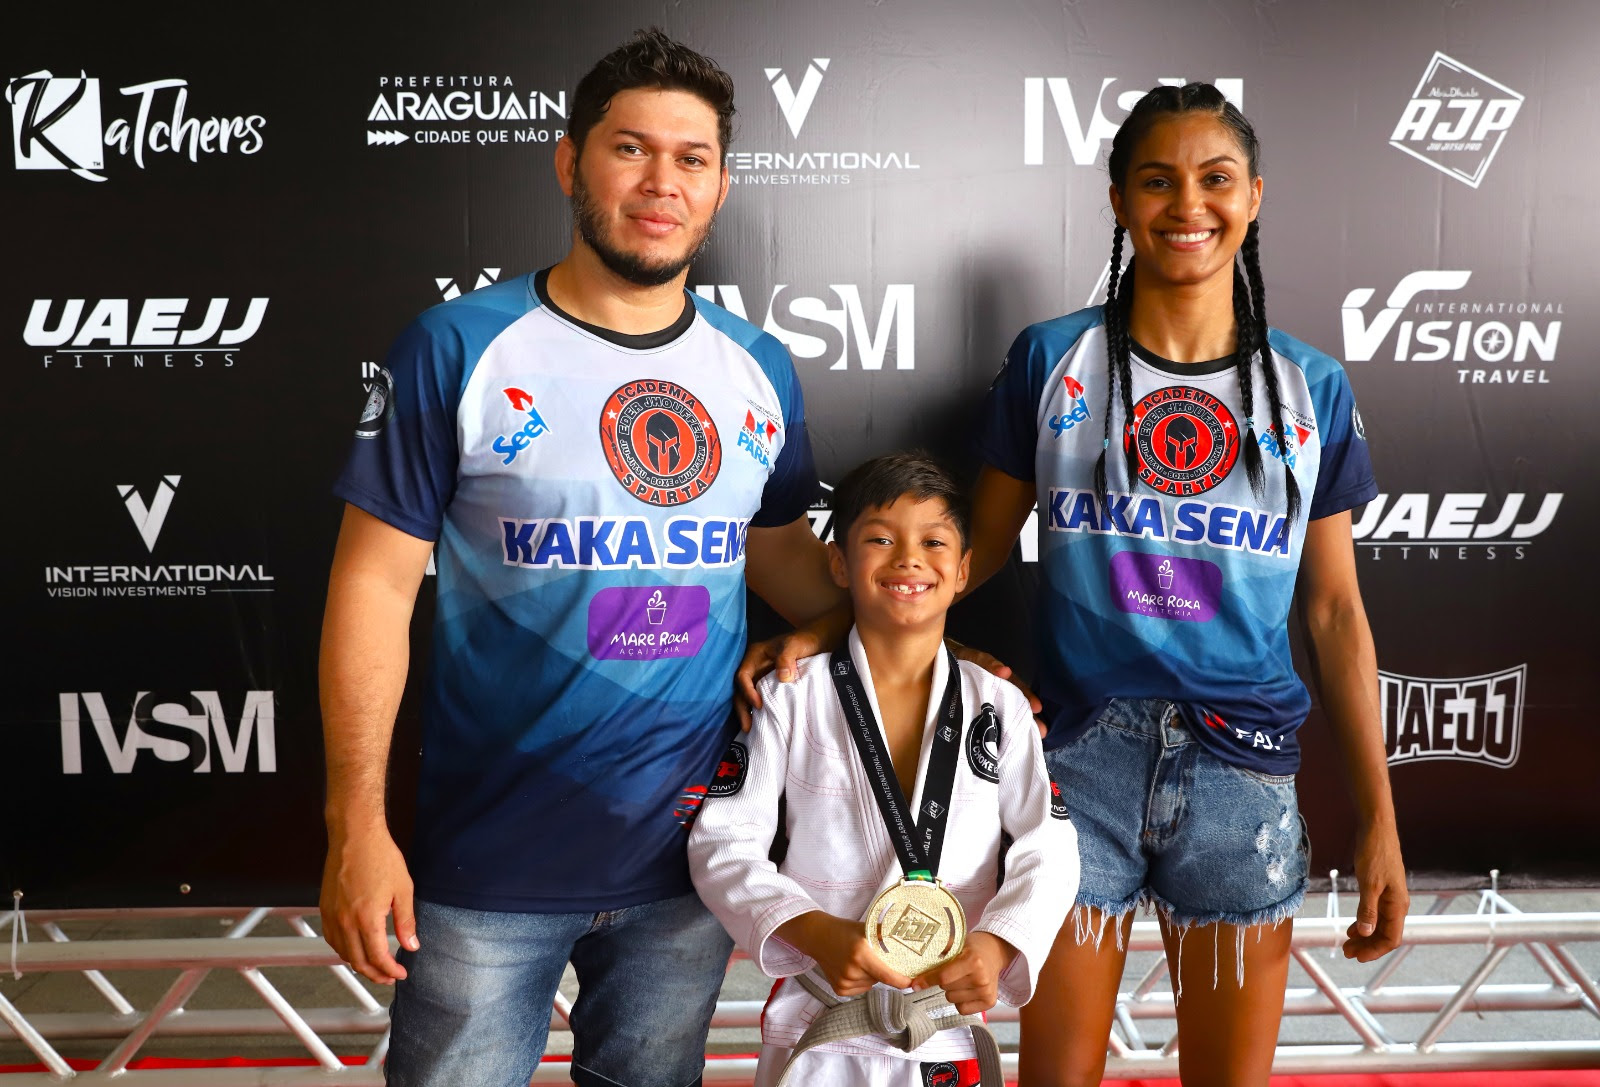 Ao lado dos pais, que também são atletas, Snyder Jhoufer, 7 anos, carrega a 15ª medalha, conquistada durante a competição em Araguaína